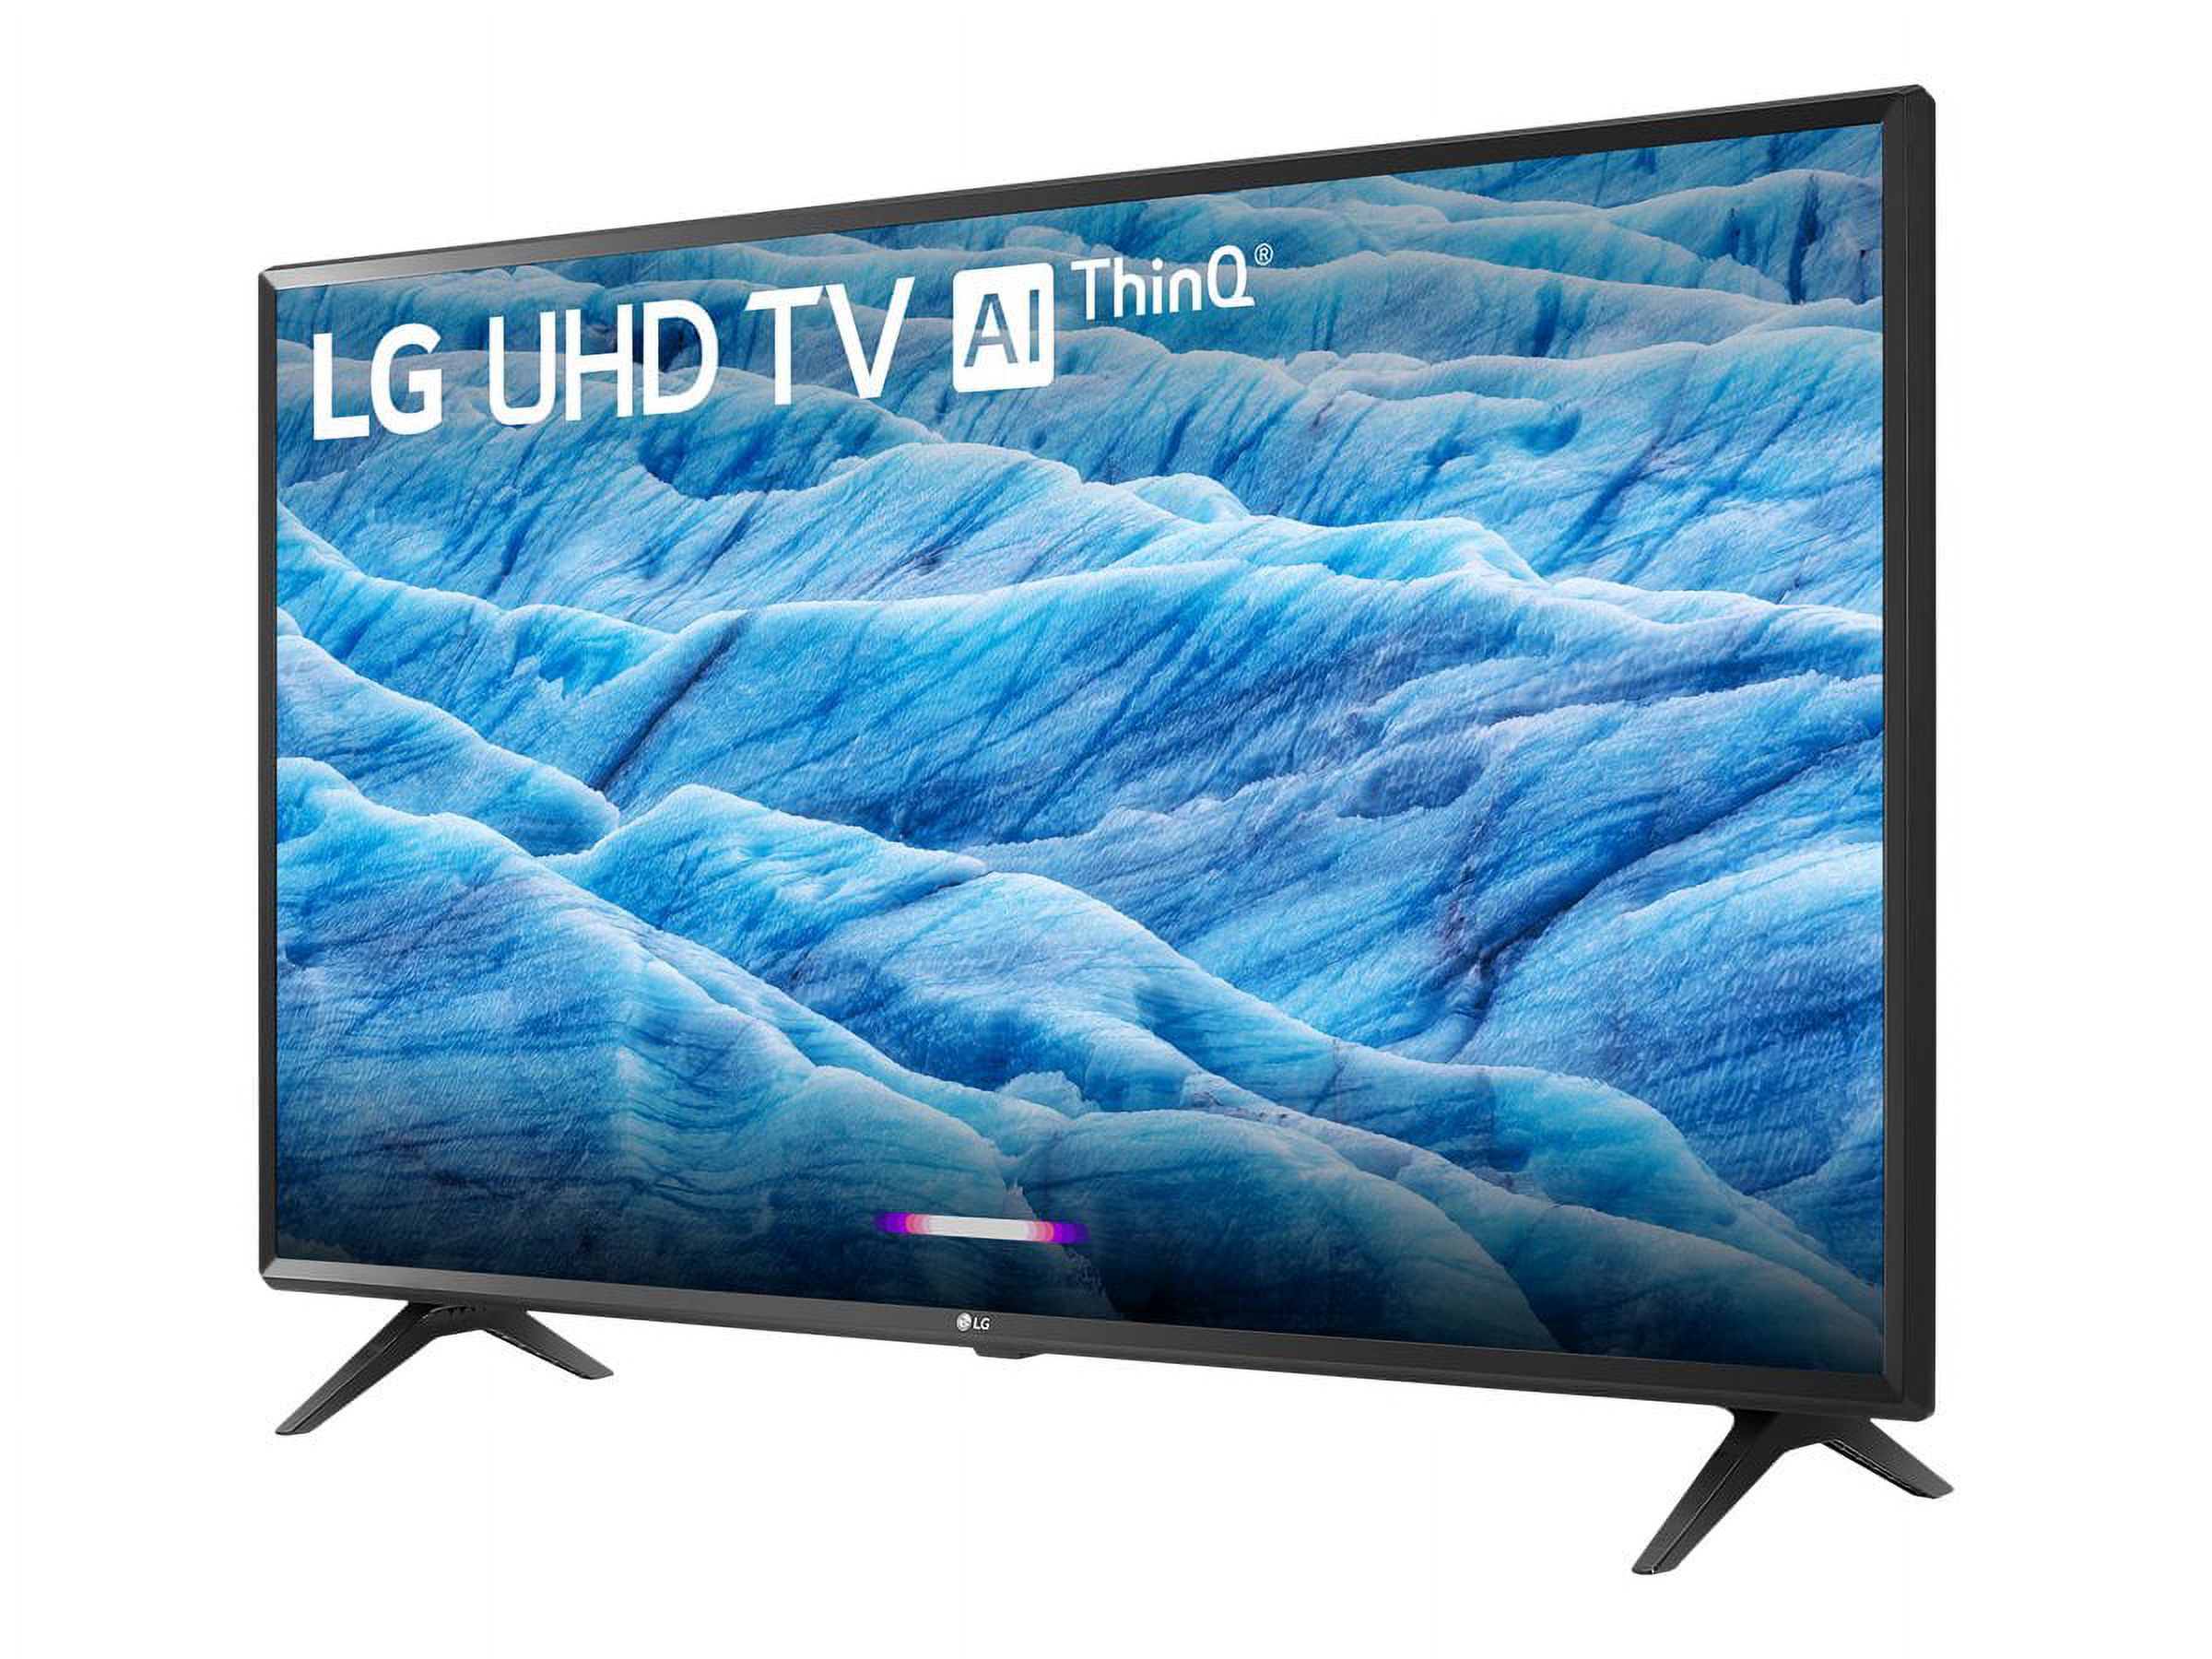 LG 49" Class HDR Smart LED-LCD TV (49UM6900PUA) - image 3 of 15